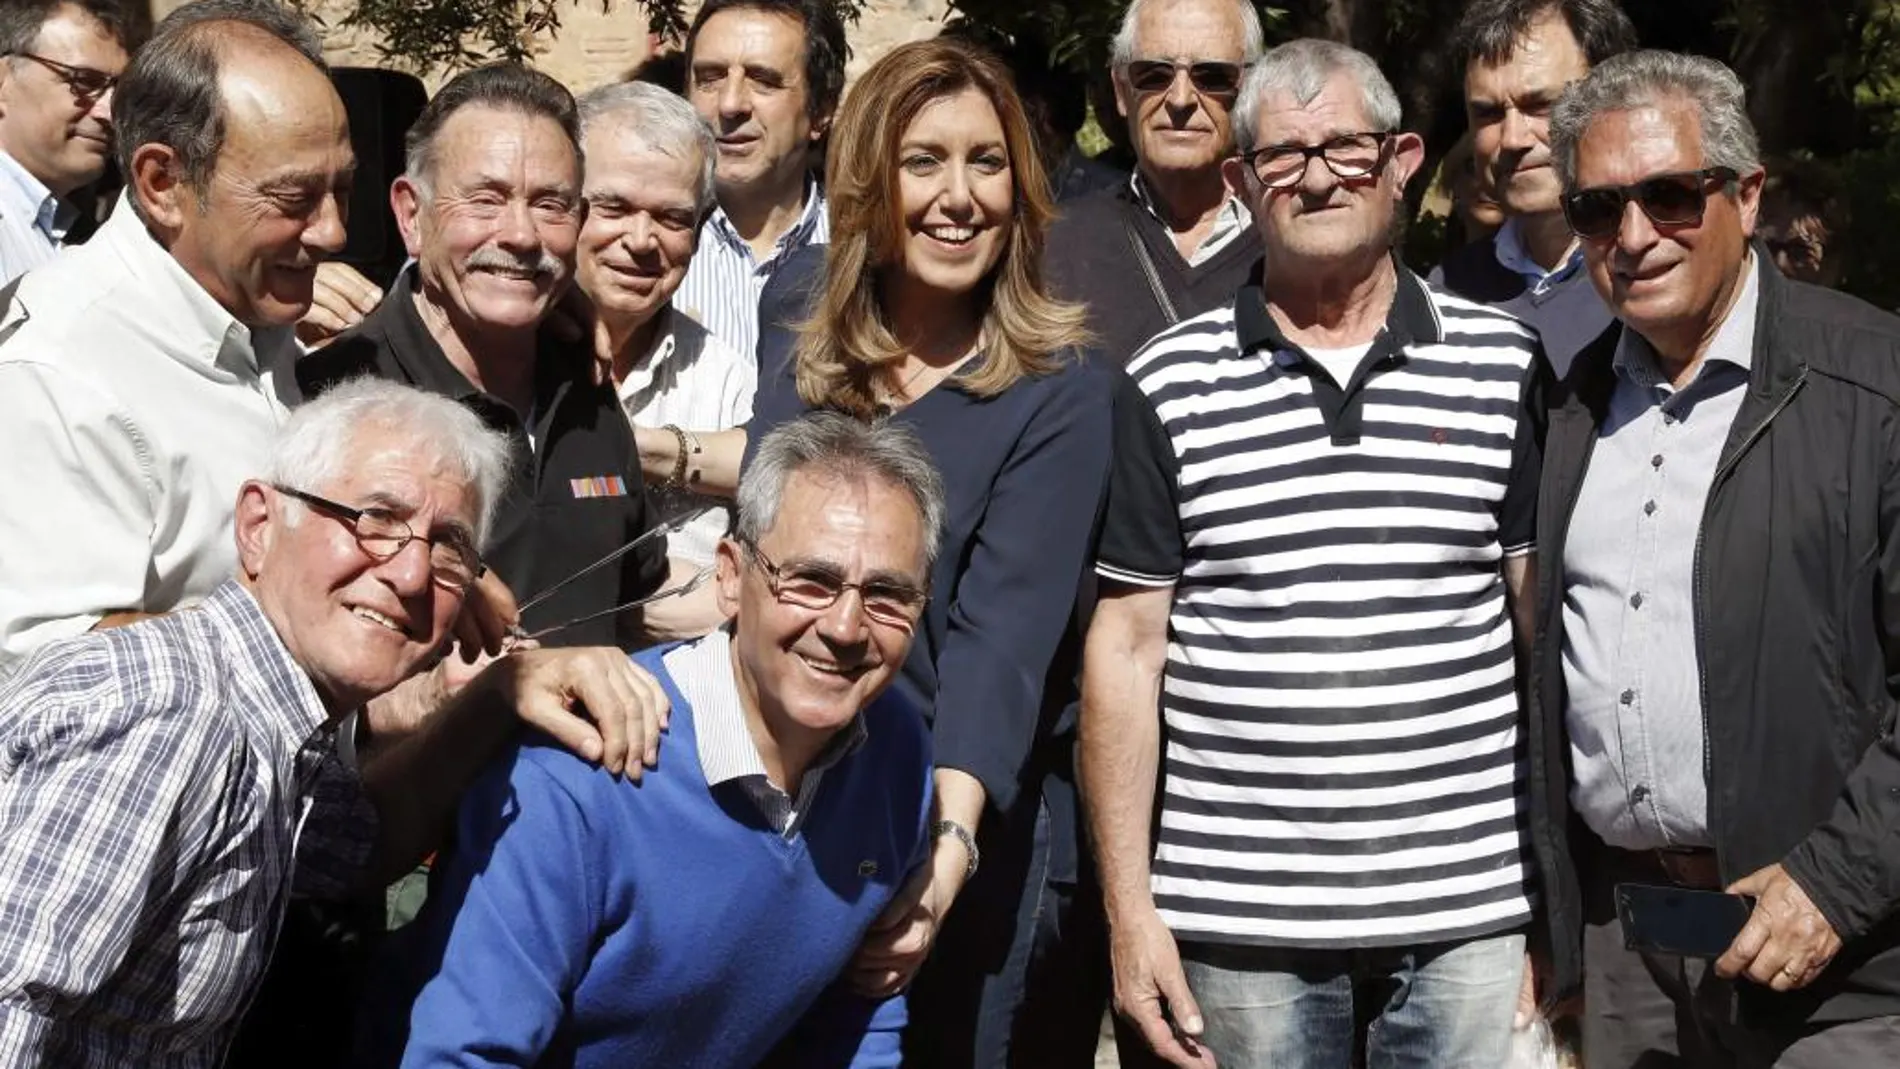 La presidenta andaluza y aspirante a las primarias del PSOE, Susana Díaz, ha compartido esta mañana un desayuno con militantes "con raíces extremeñas"de Sant Boi de Llobregat